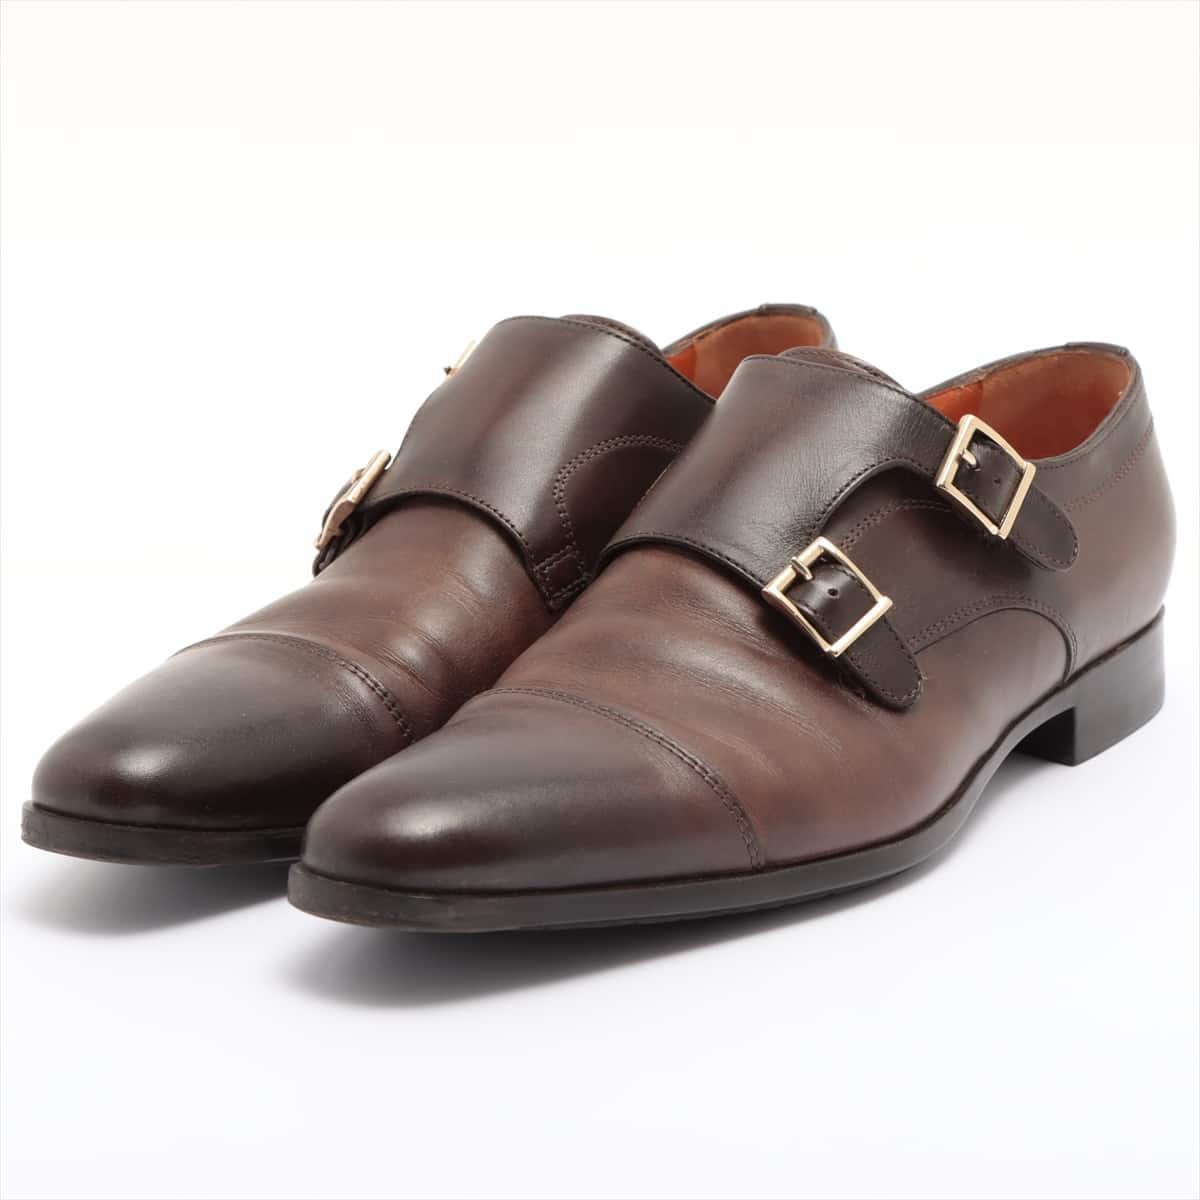 Santoni Leather Leather shoes 7 Men's Brown Double monk strap